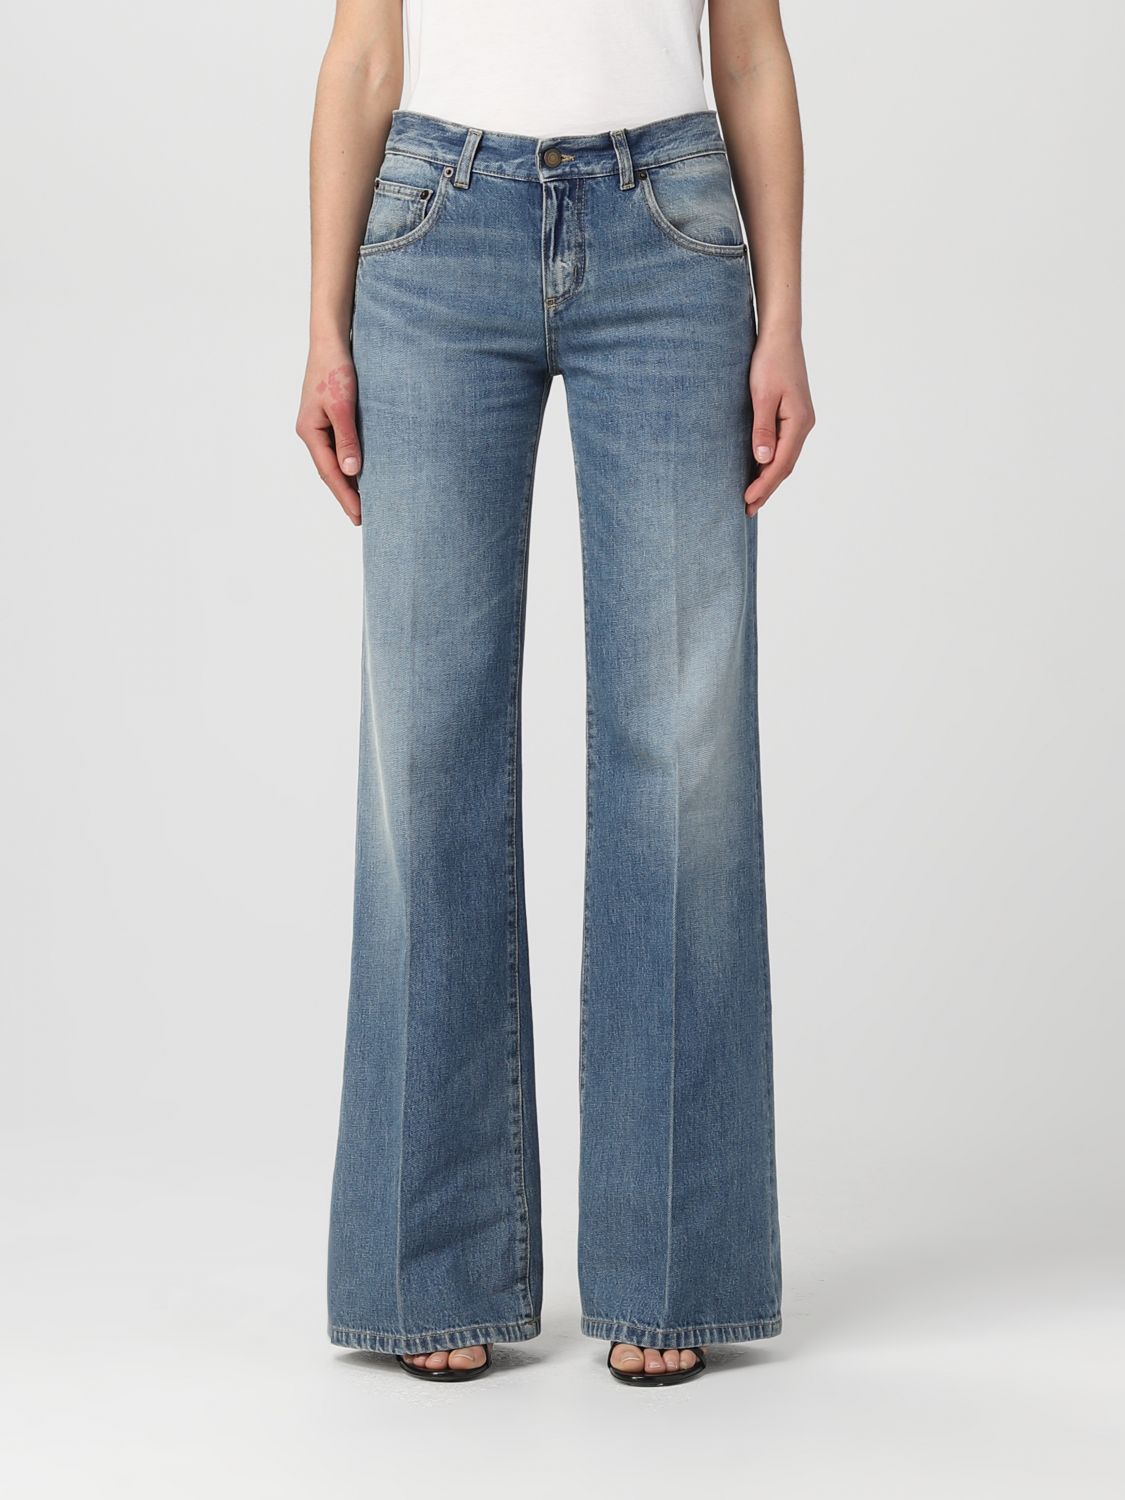 Saint Laurent Saint Laurent denim jeans